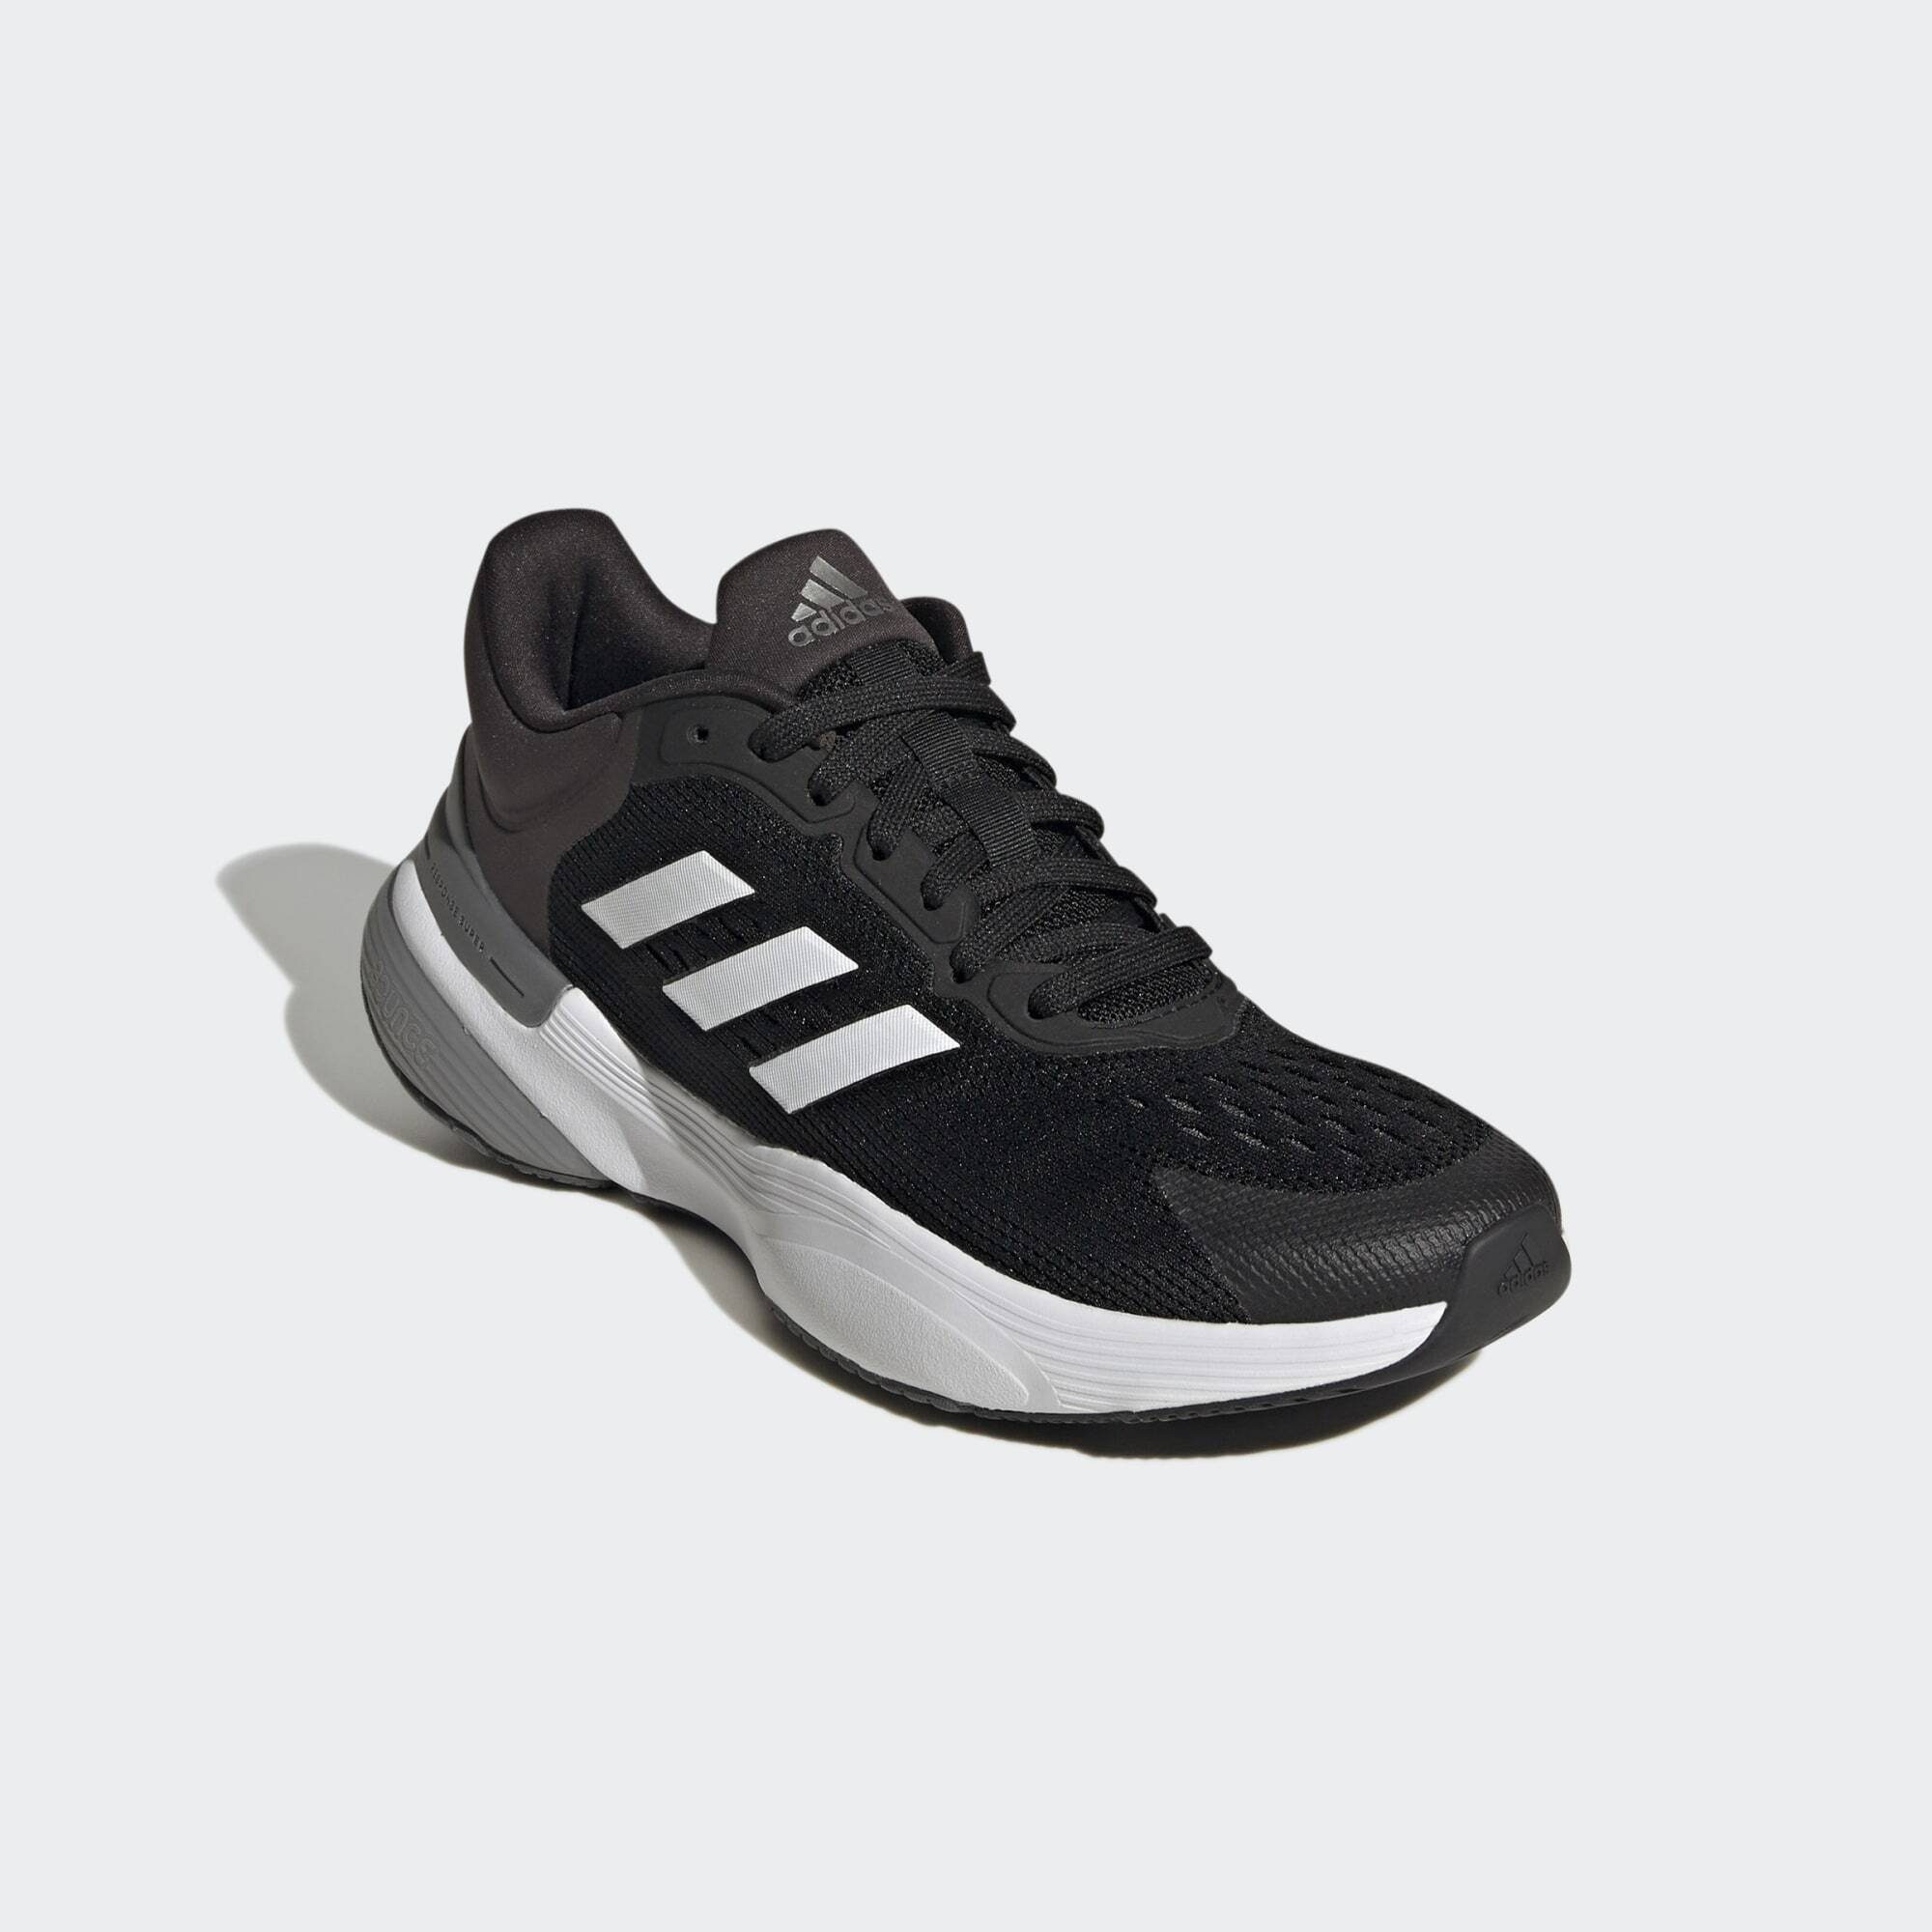 adidas Performance RESPONSE SUPER 3.0 LAUFSCHUH Sneaker Core Black / Cloud White / Carbon